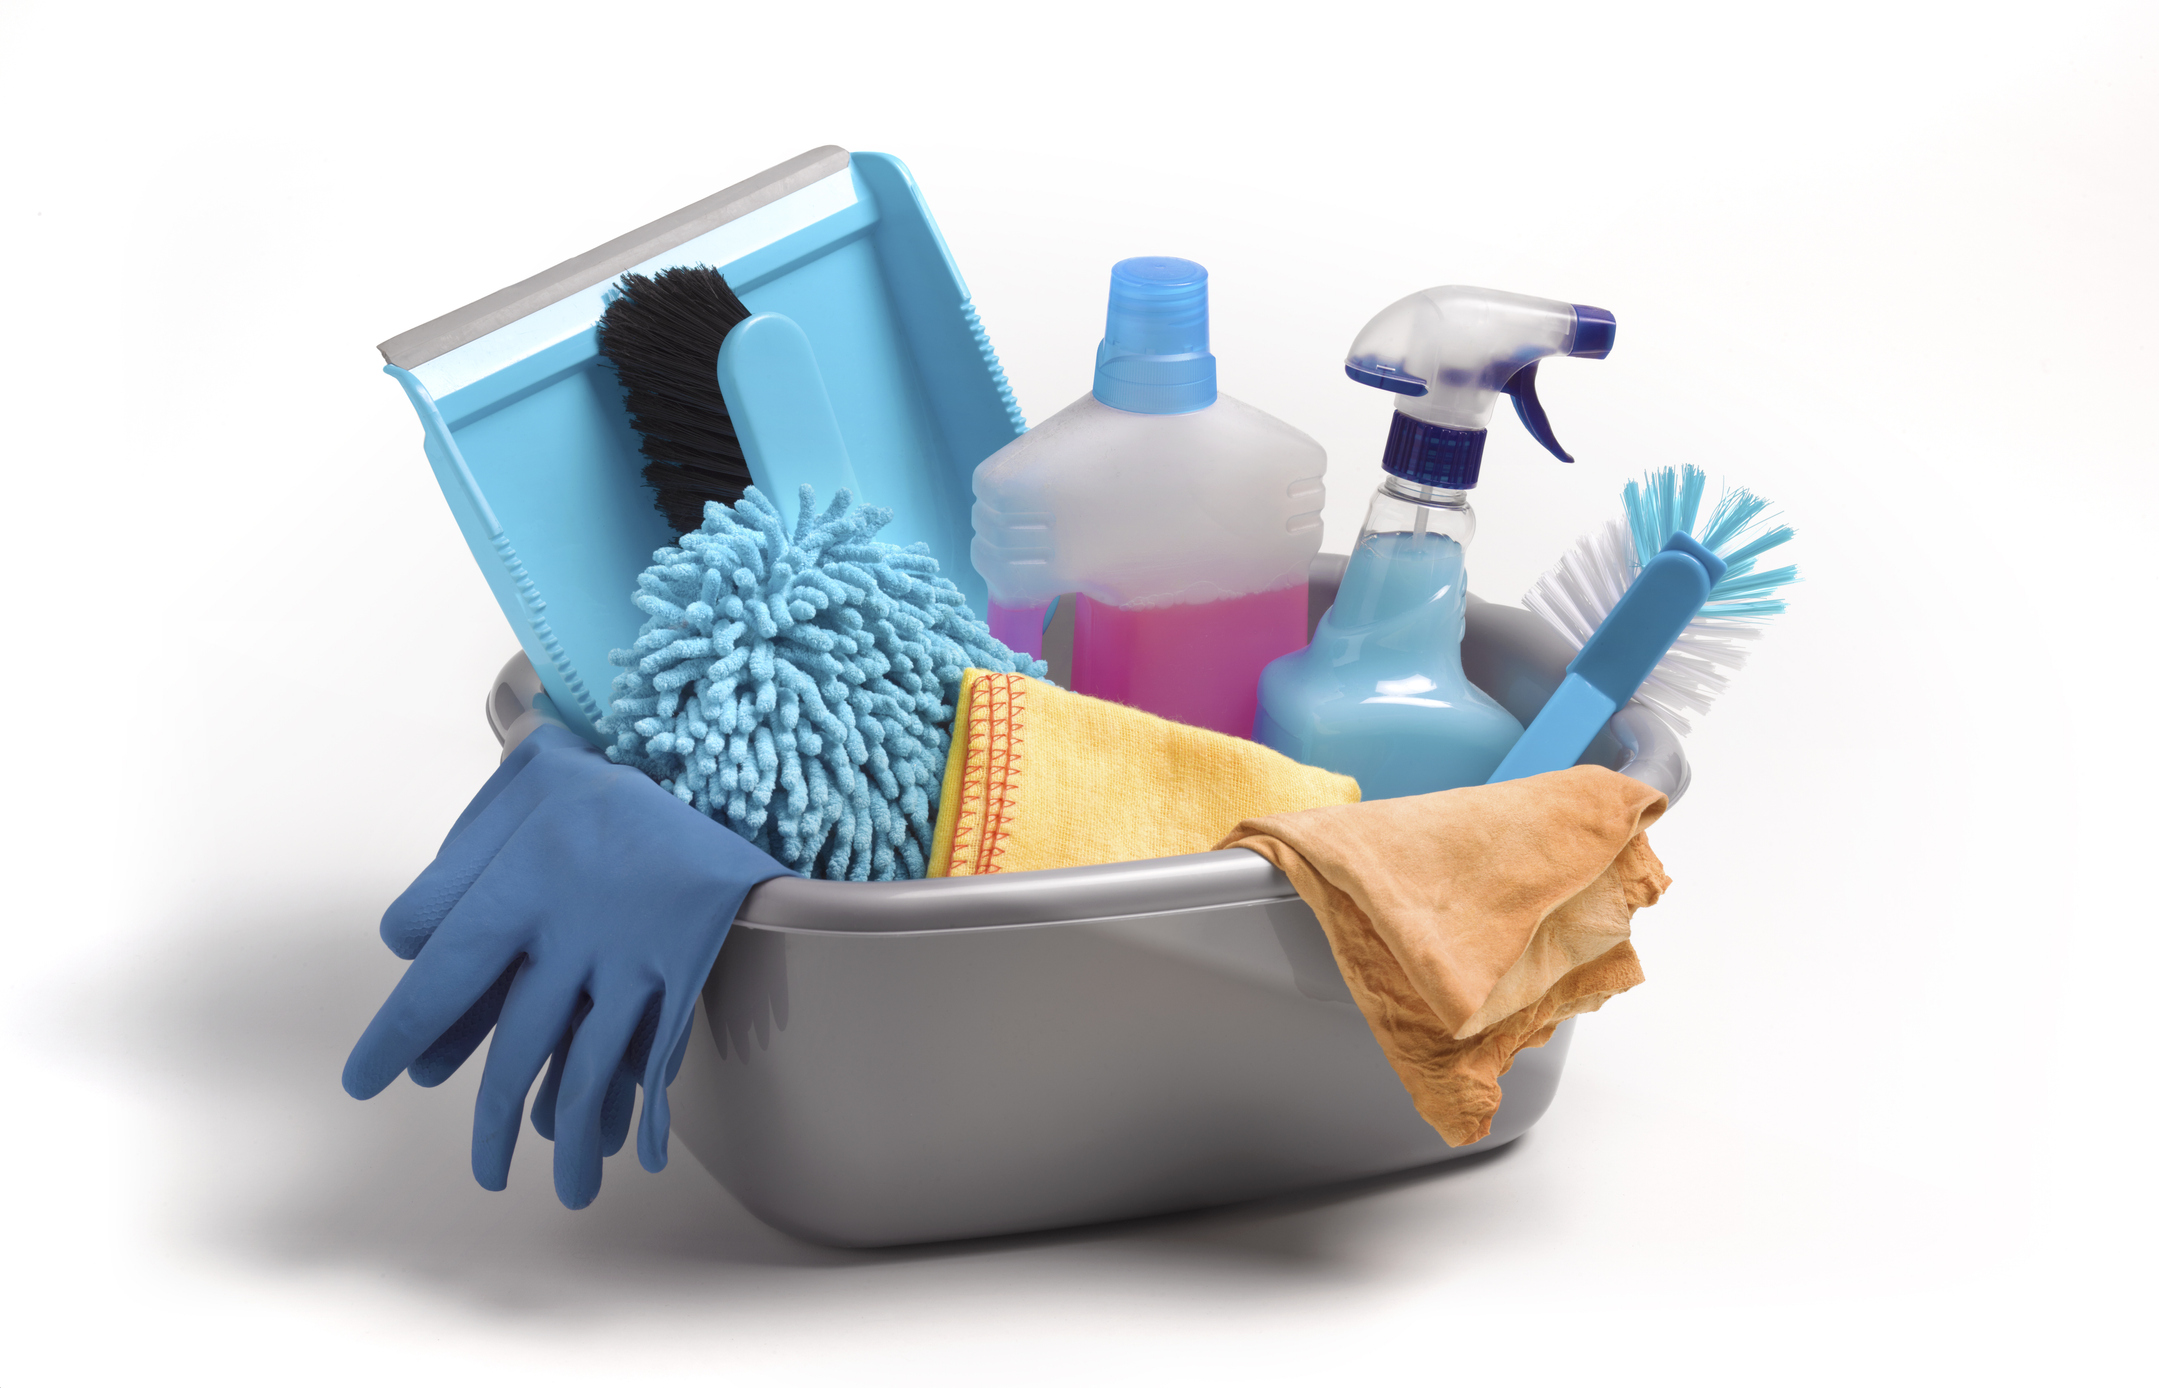 cinco productos de limpieza típicos en las casas españolas que debes evitar, según la ocu